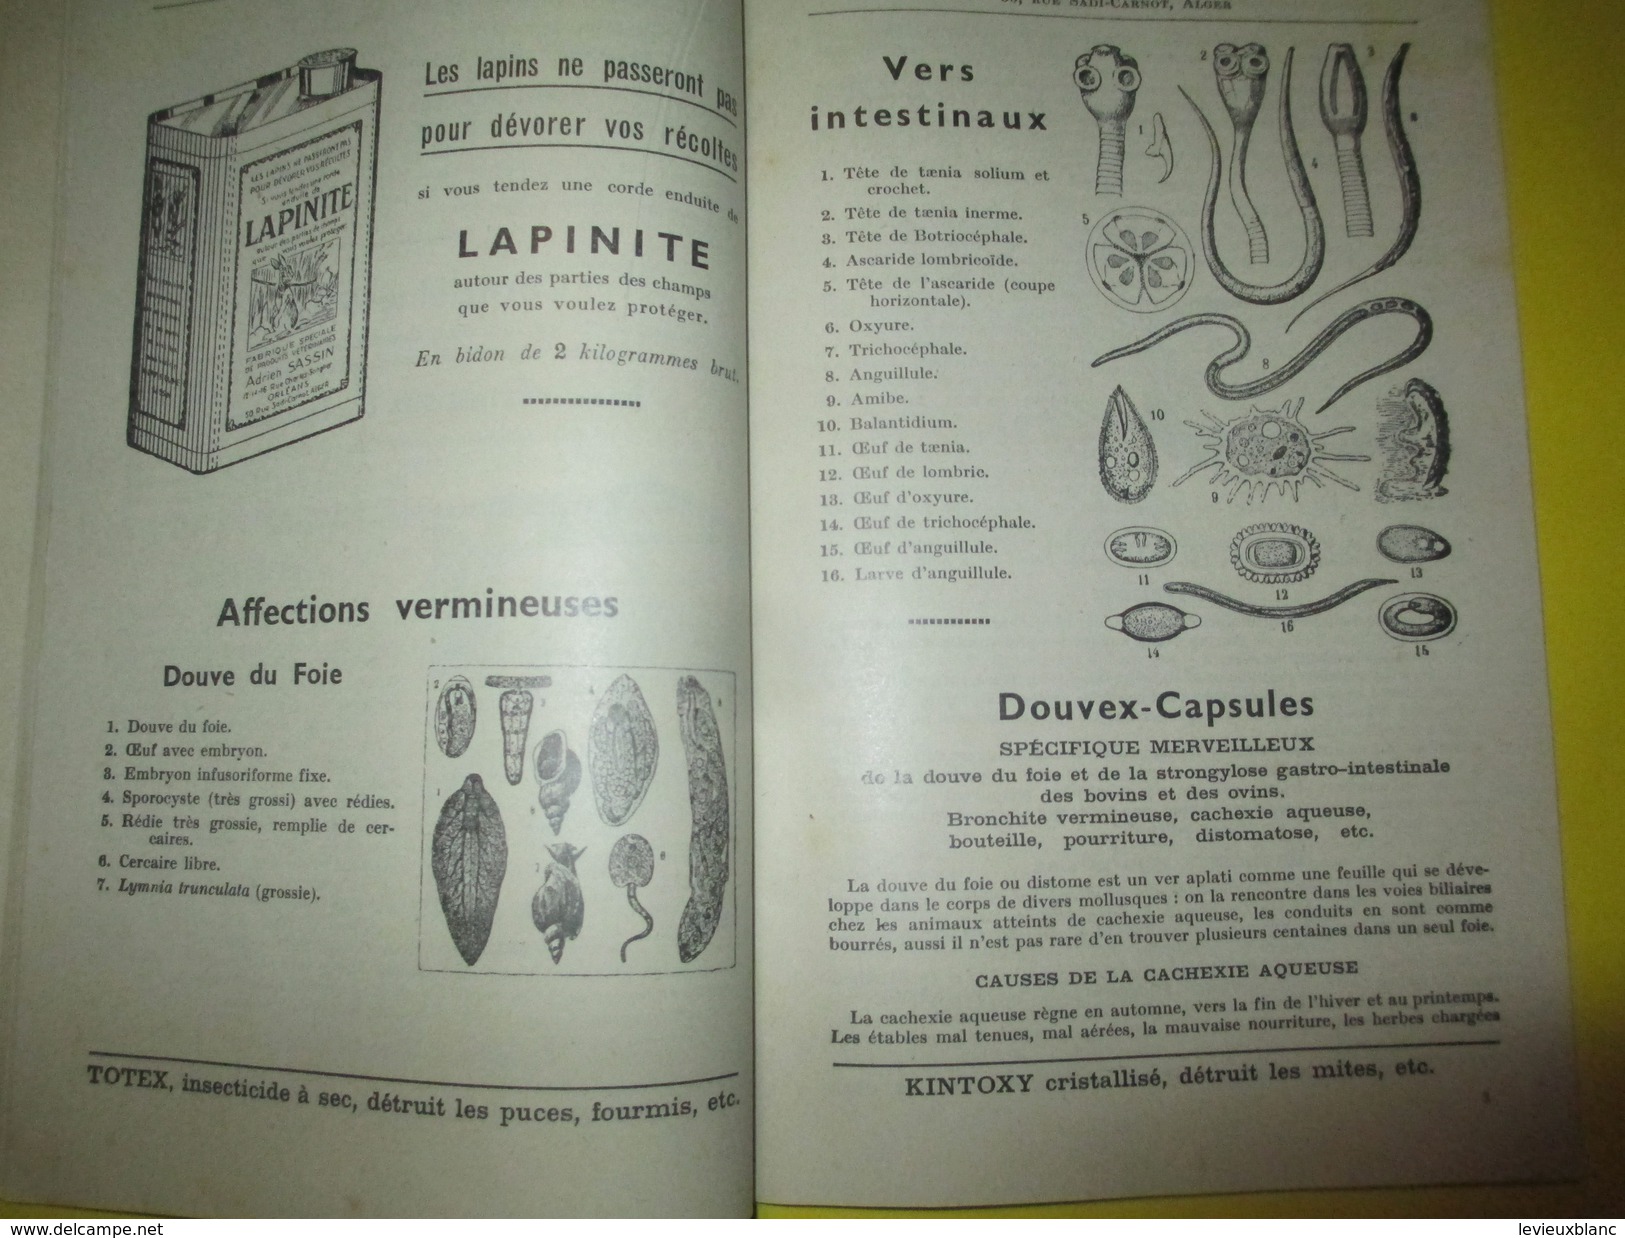 Elevage/Catalogue / Fabrique Spéciale De Produits Vétérinaires/Adrien Sassin/ ORLEANS / ALGER/ 1955          CAT158 - Agricultura